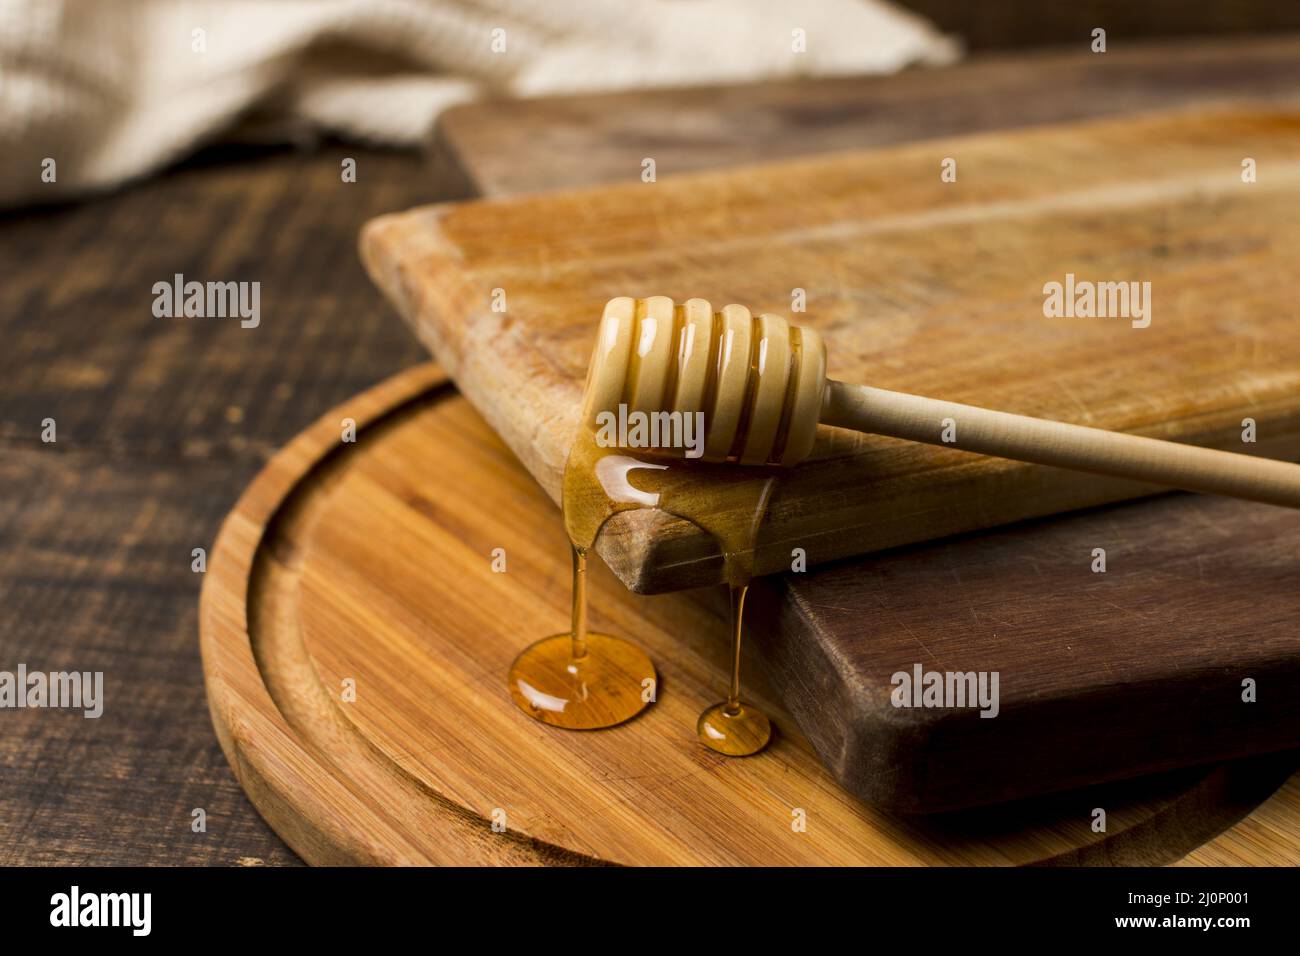 Löffel mit Honigfleck. Hohe Qualität und Auflösung schönes Fotokonzept Stockfoto